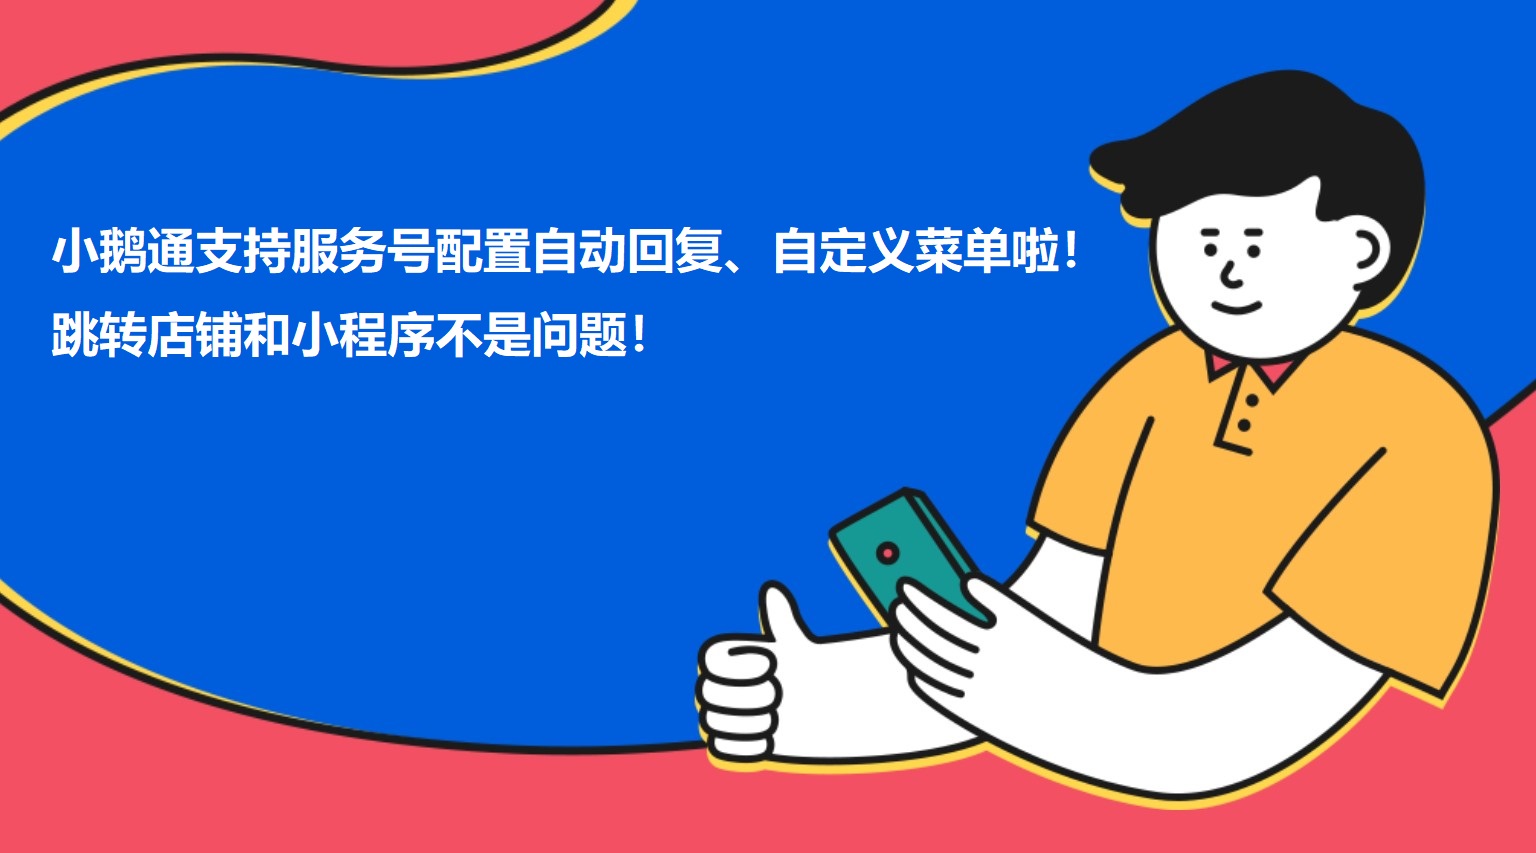 重庆小鹅通支持服务号配置自动回复、自定义菜单啦！跳转店铺和小程序不是问题！